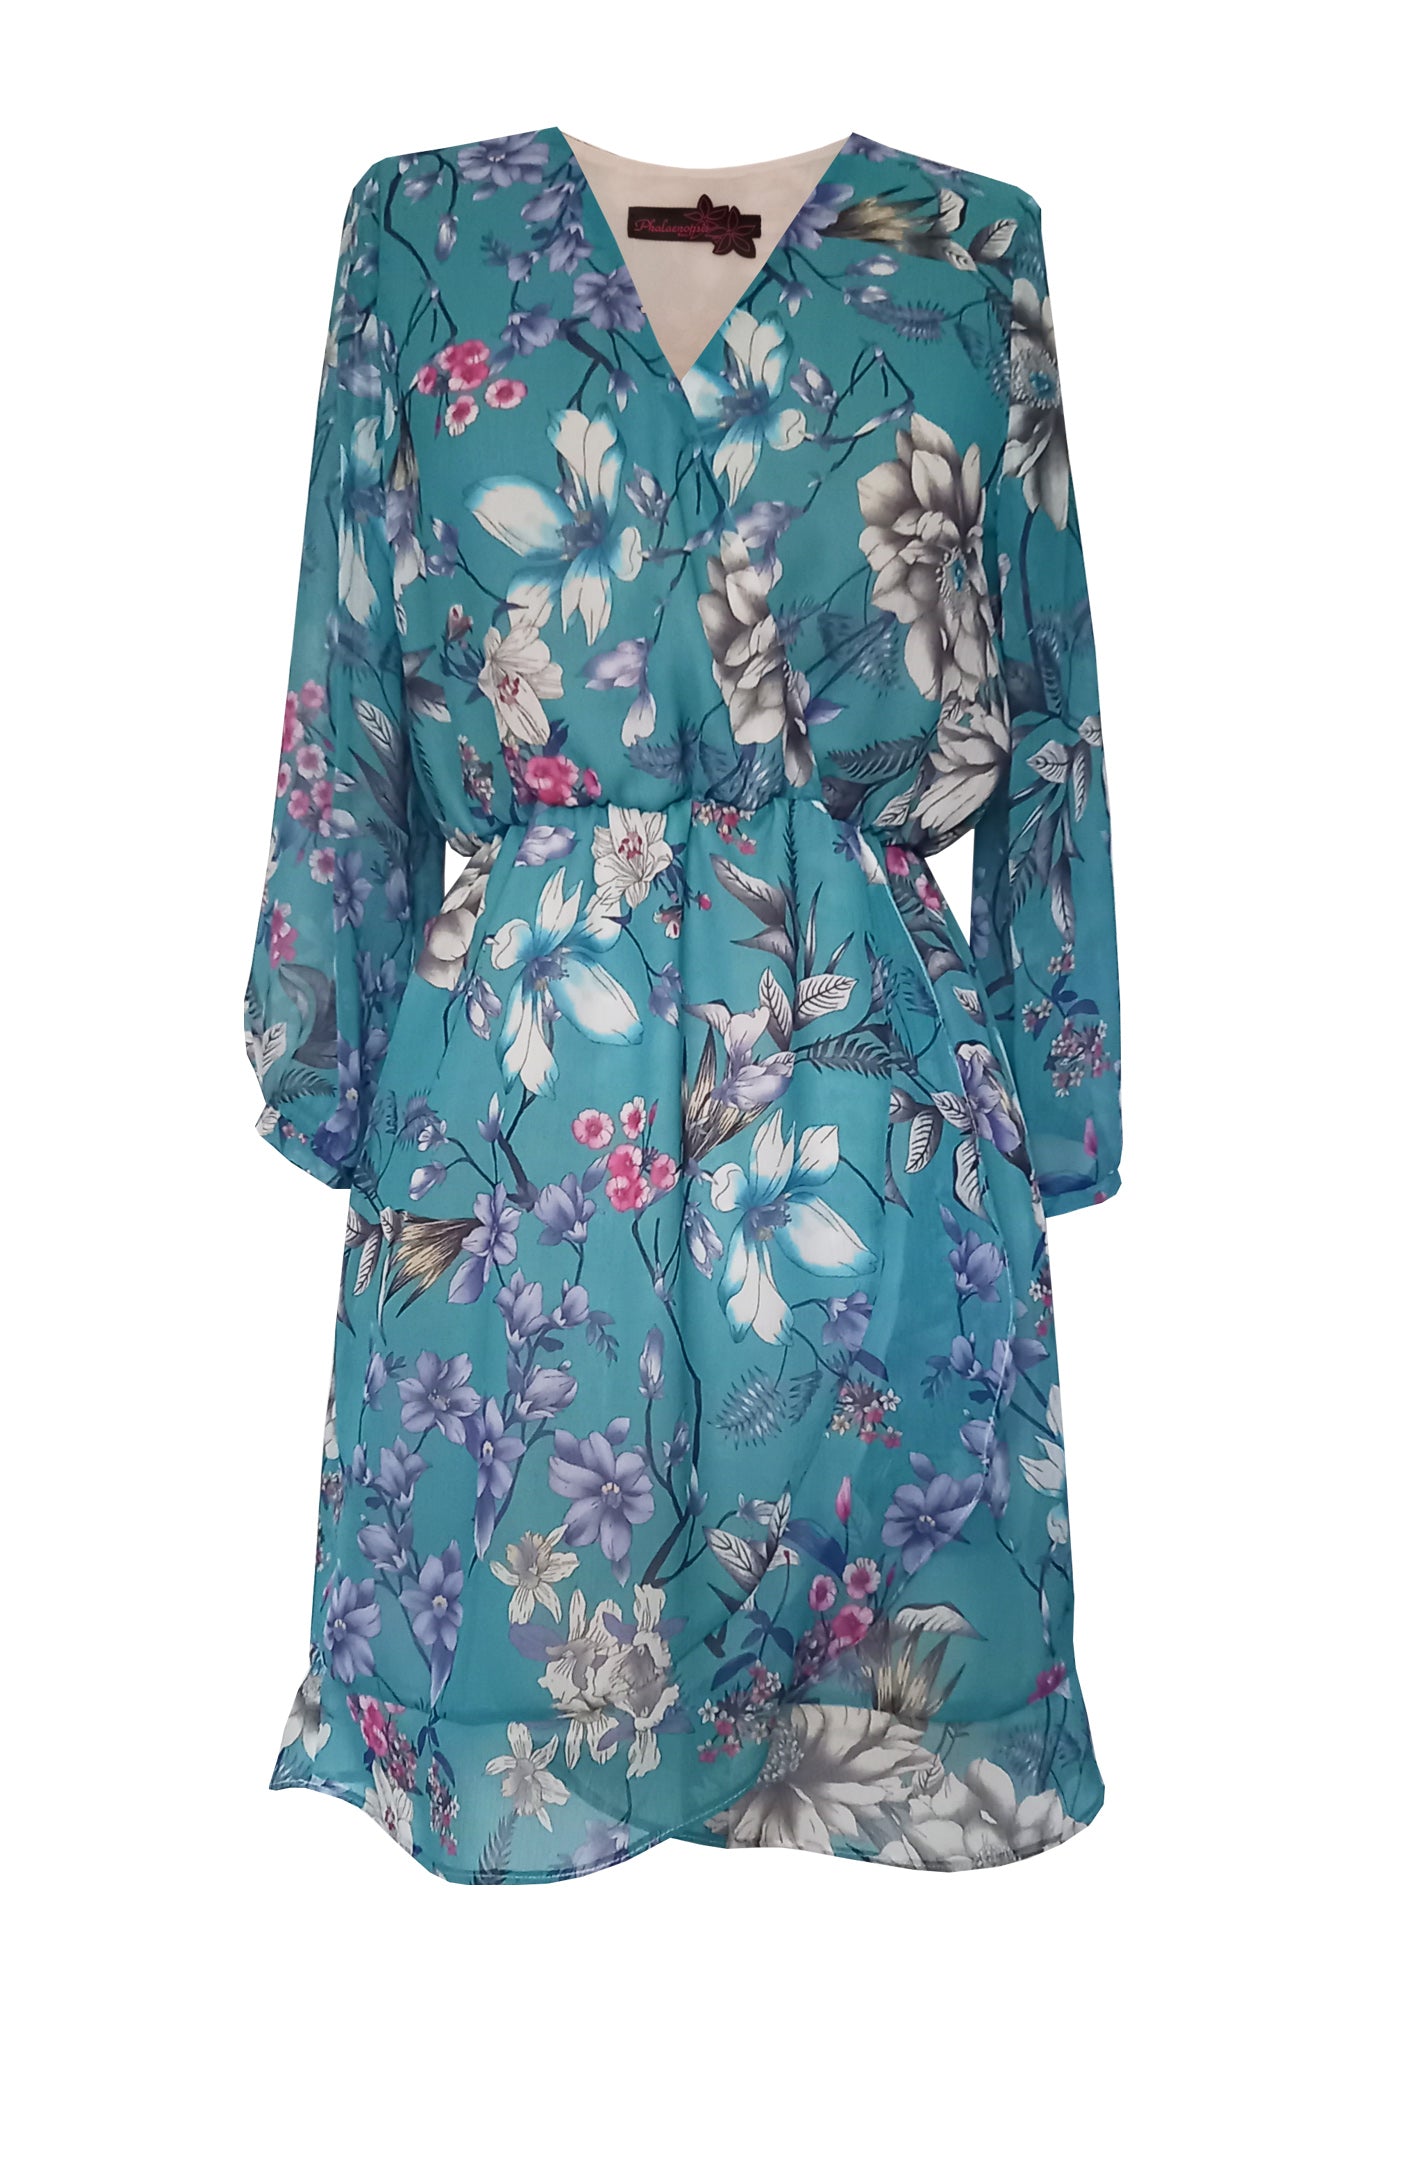 Robe COCO iris - Phalaenopsis Paris - robe fête des mères, idée cadeau femme, robe doublée à manches longues